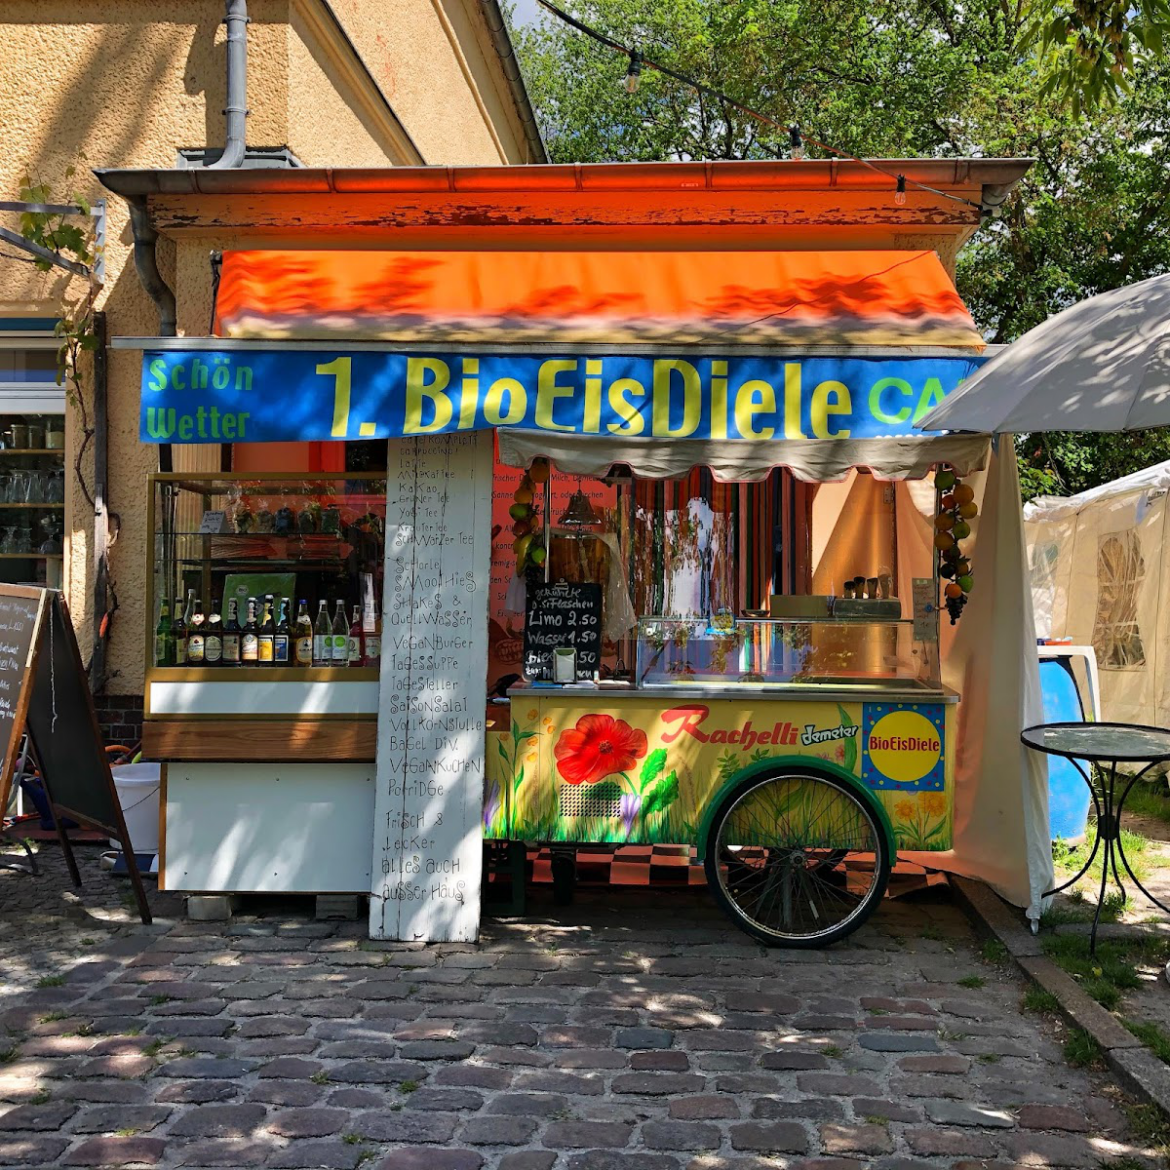  1. Berliner MüsliCafe, Feinkost SüdOst, BioeisDiele, vegan und glutenfrei